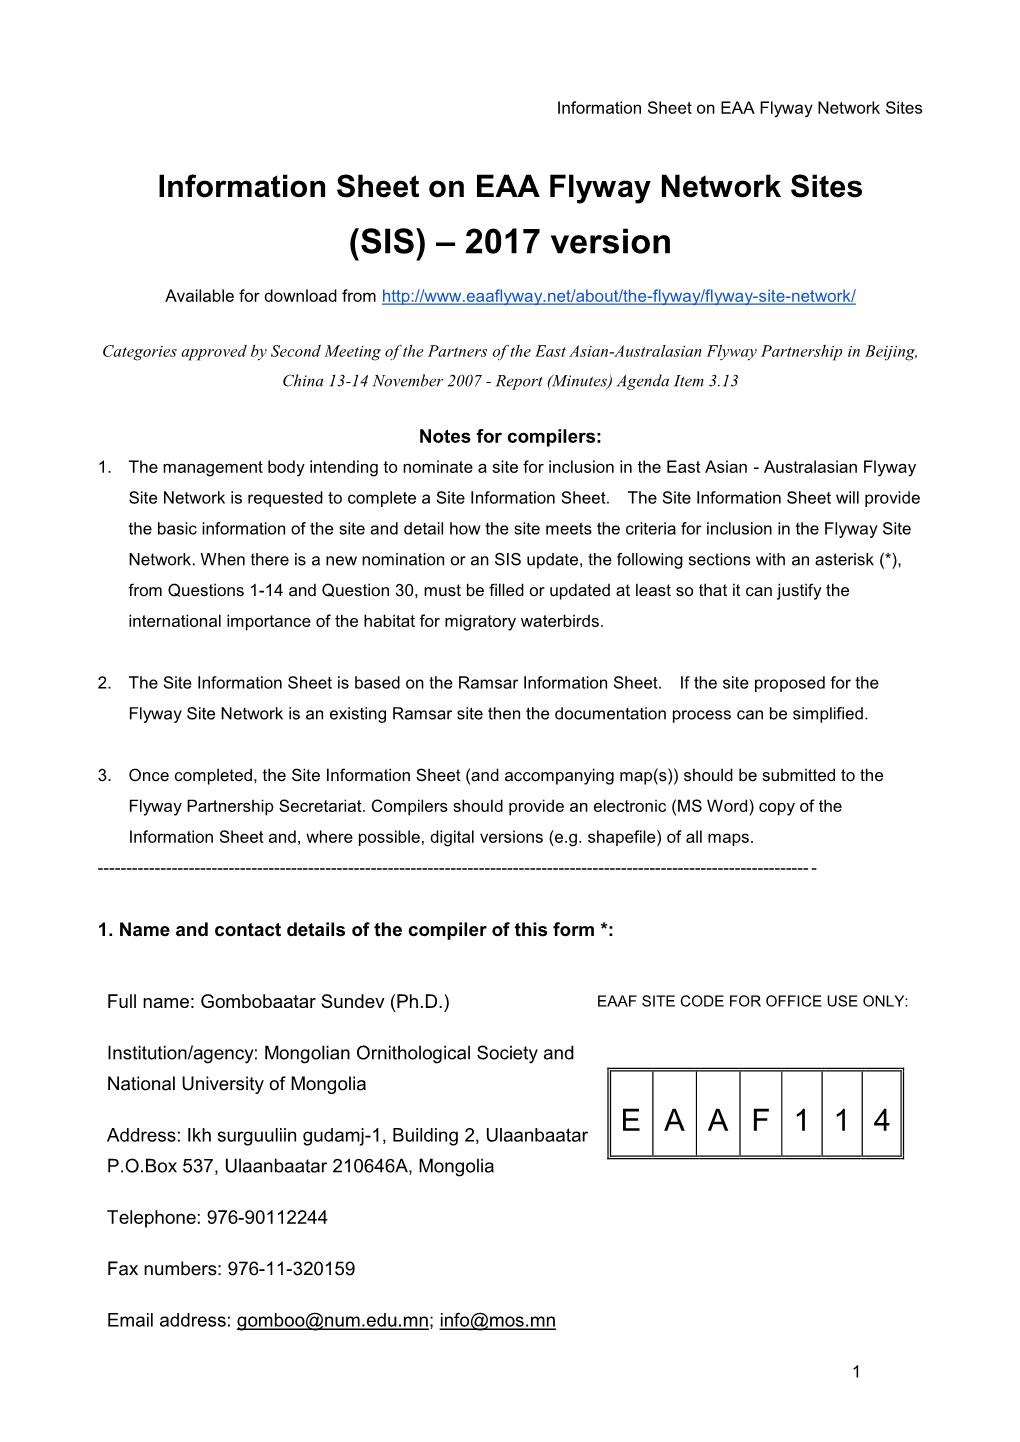 (SIS) – 2017 Version